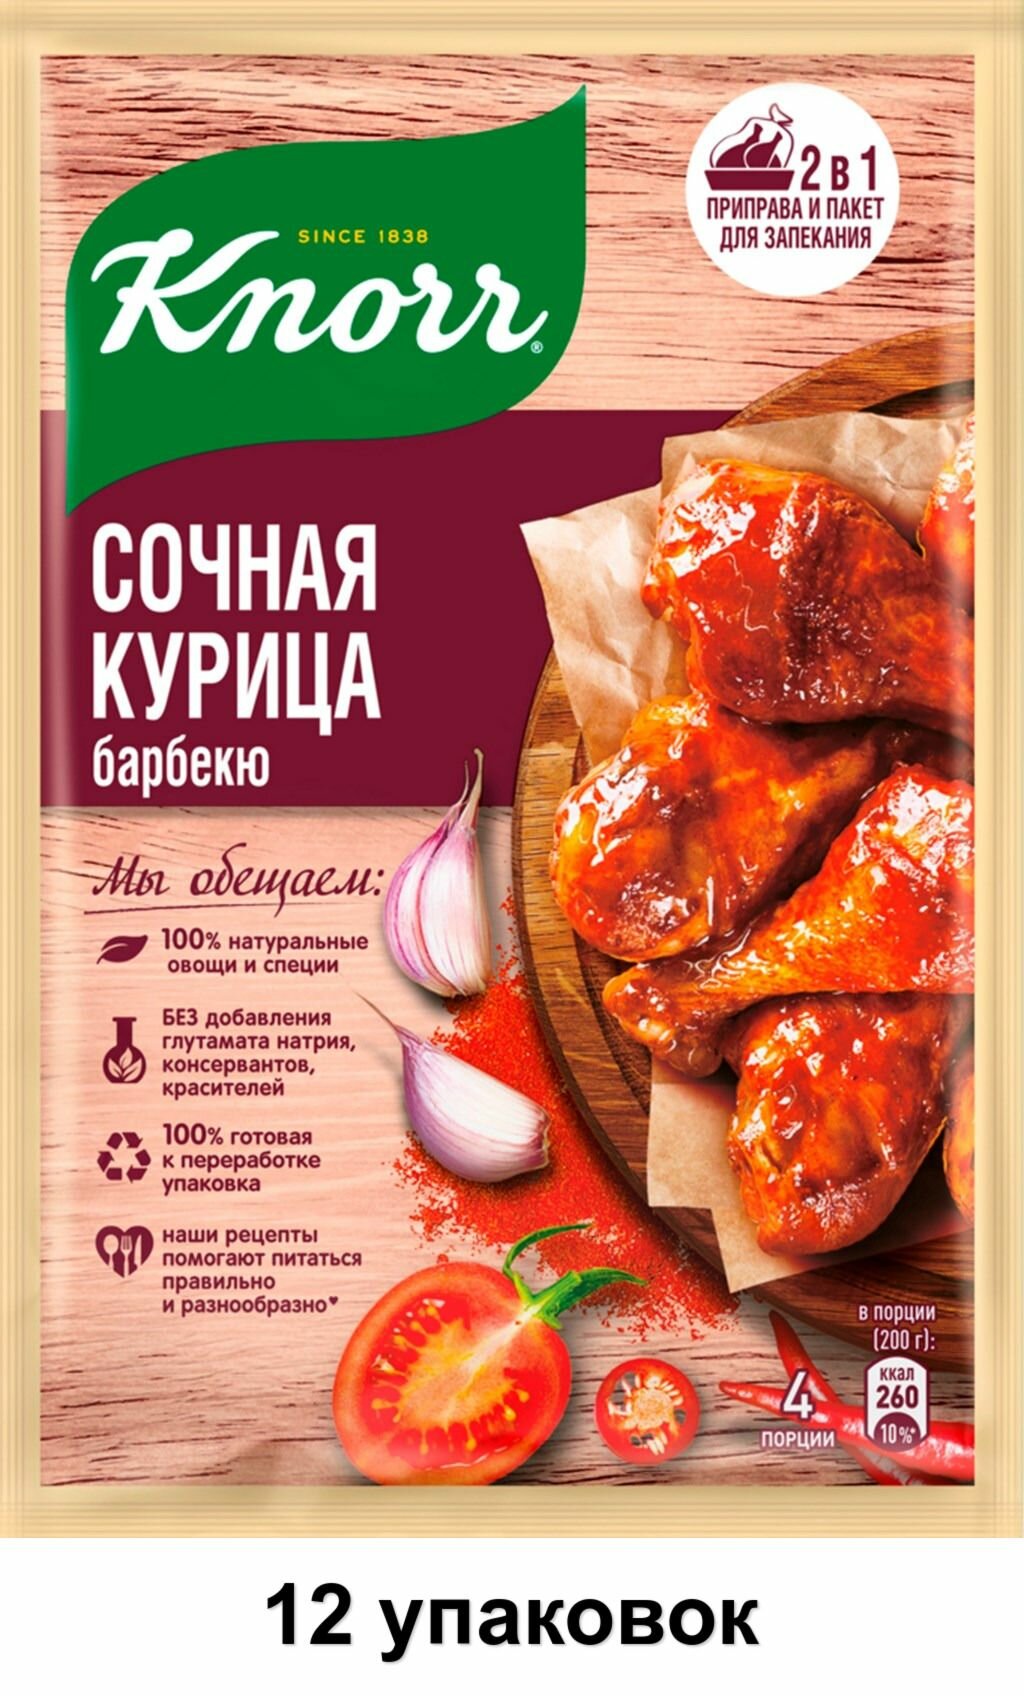 Knorr Приправа Сочная курица барбекю, 26 г, 12 уп